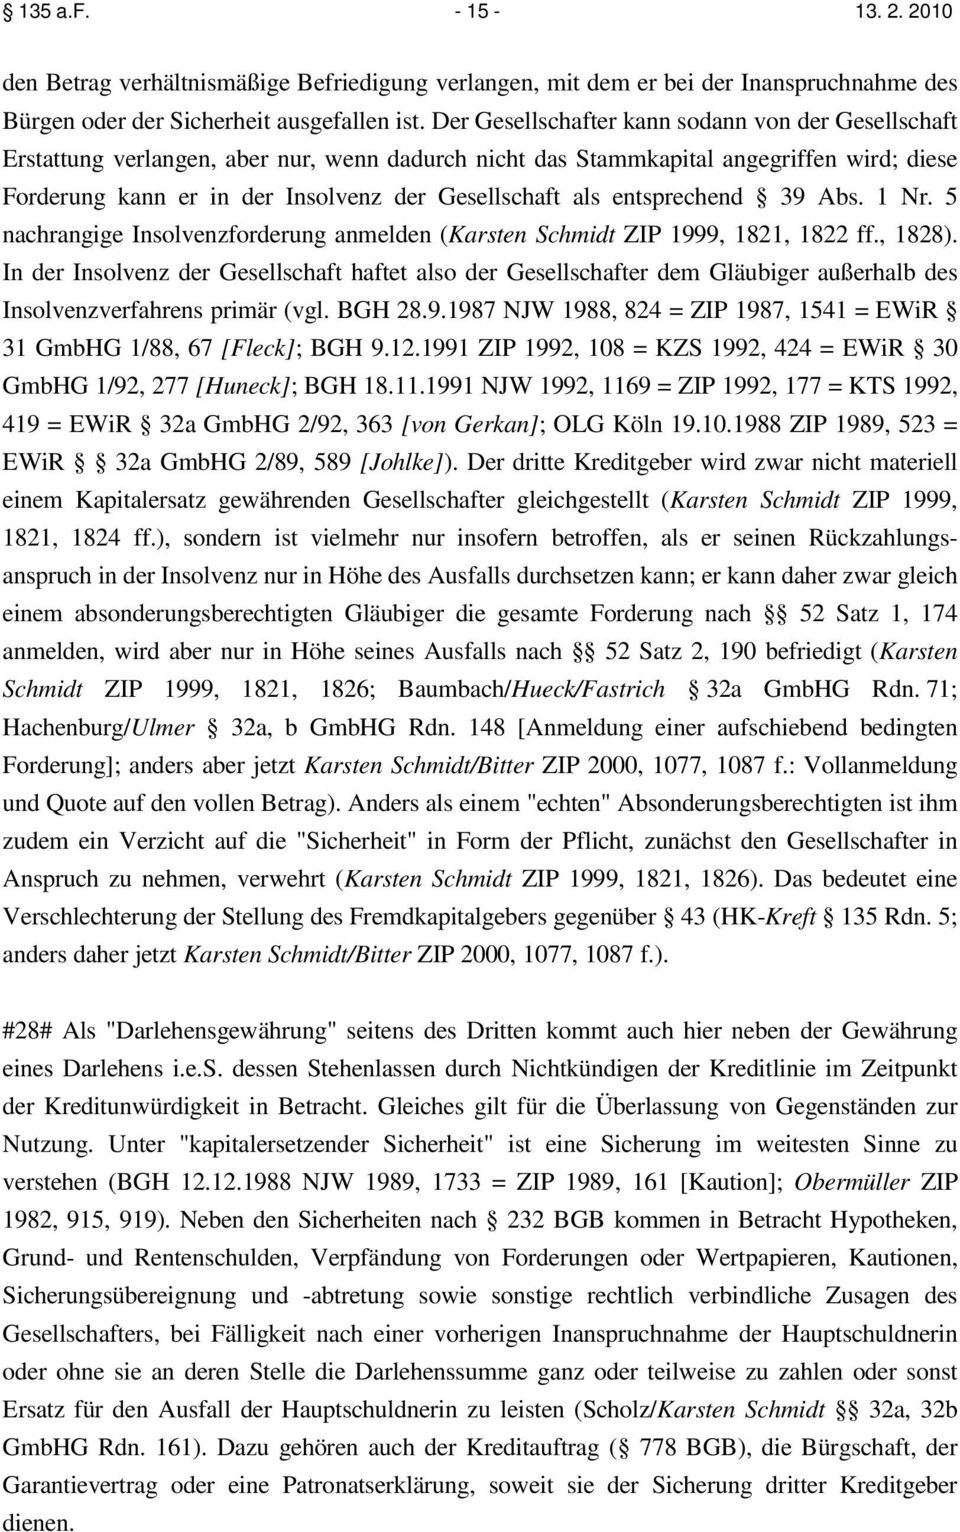 entsprechend 39 Abs. 1 Nr. 5 nachrangige Insolvenzforderung anmelden (Karsten Schmidt ZIP 1999, 1821, 1822 ff., 1828).